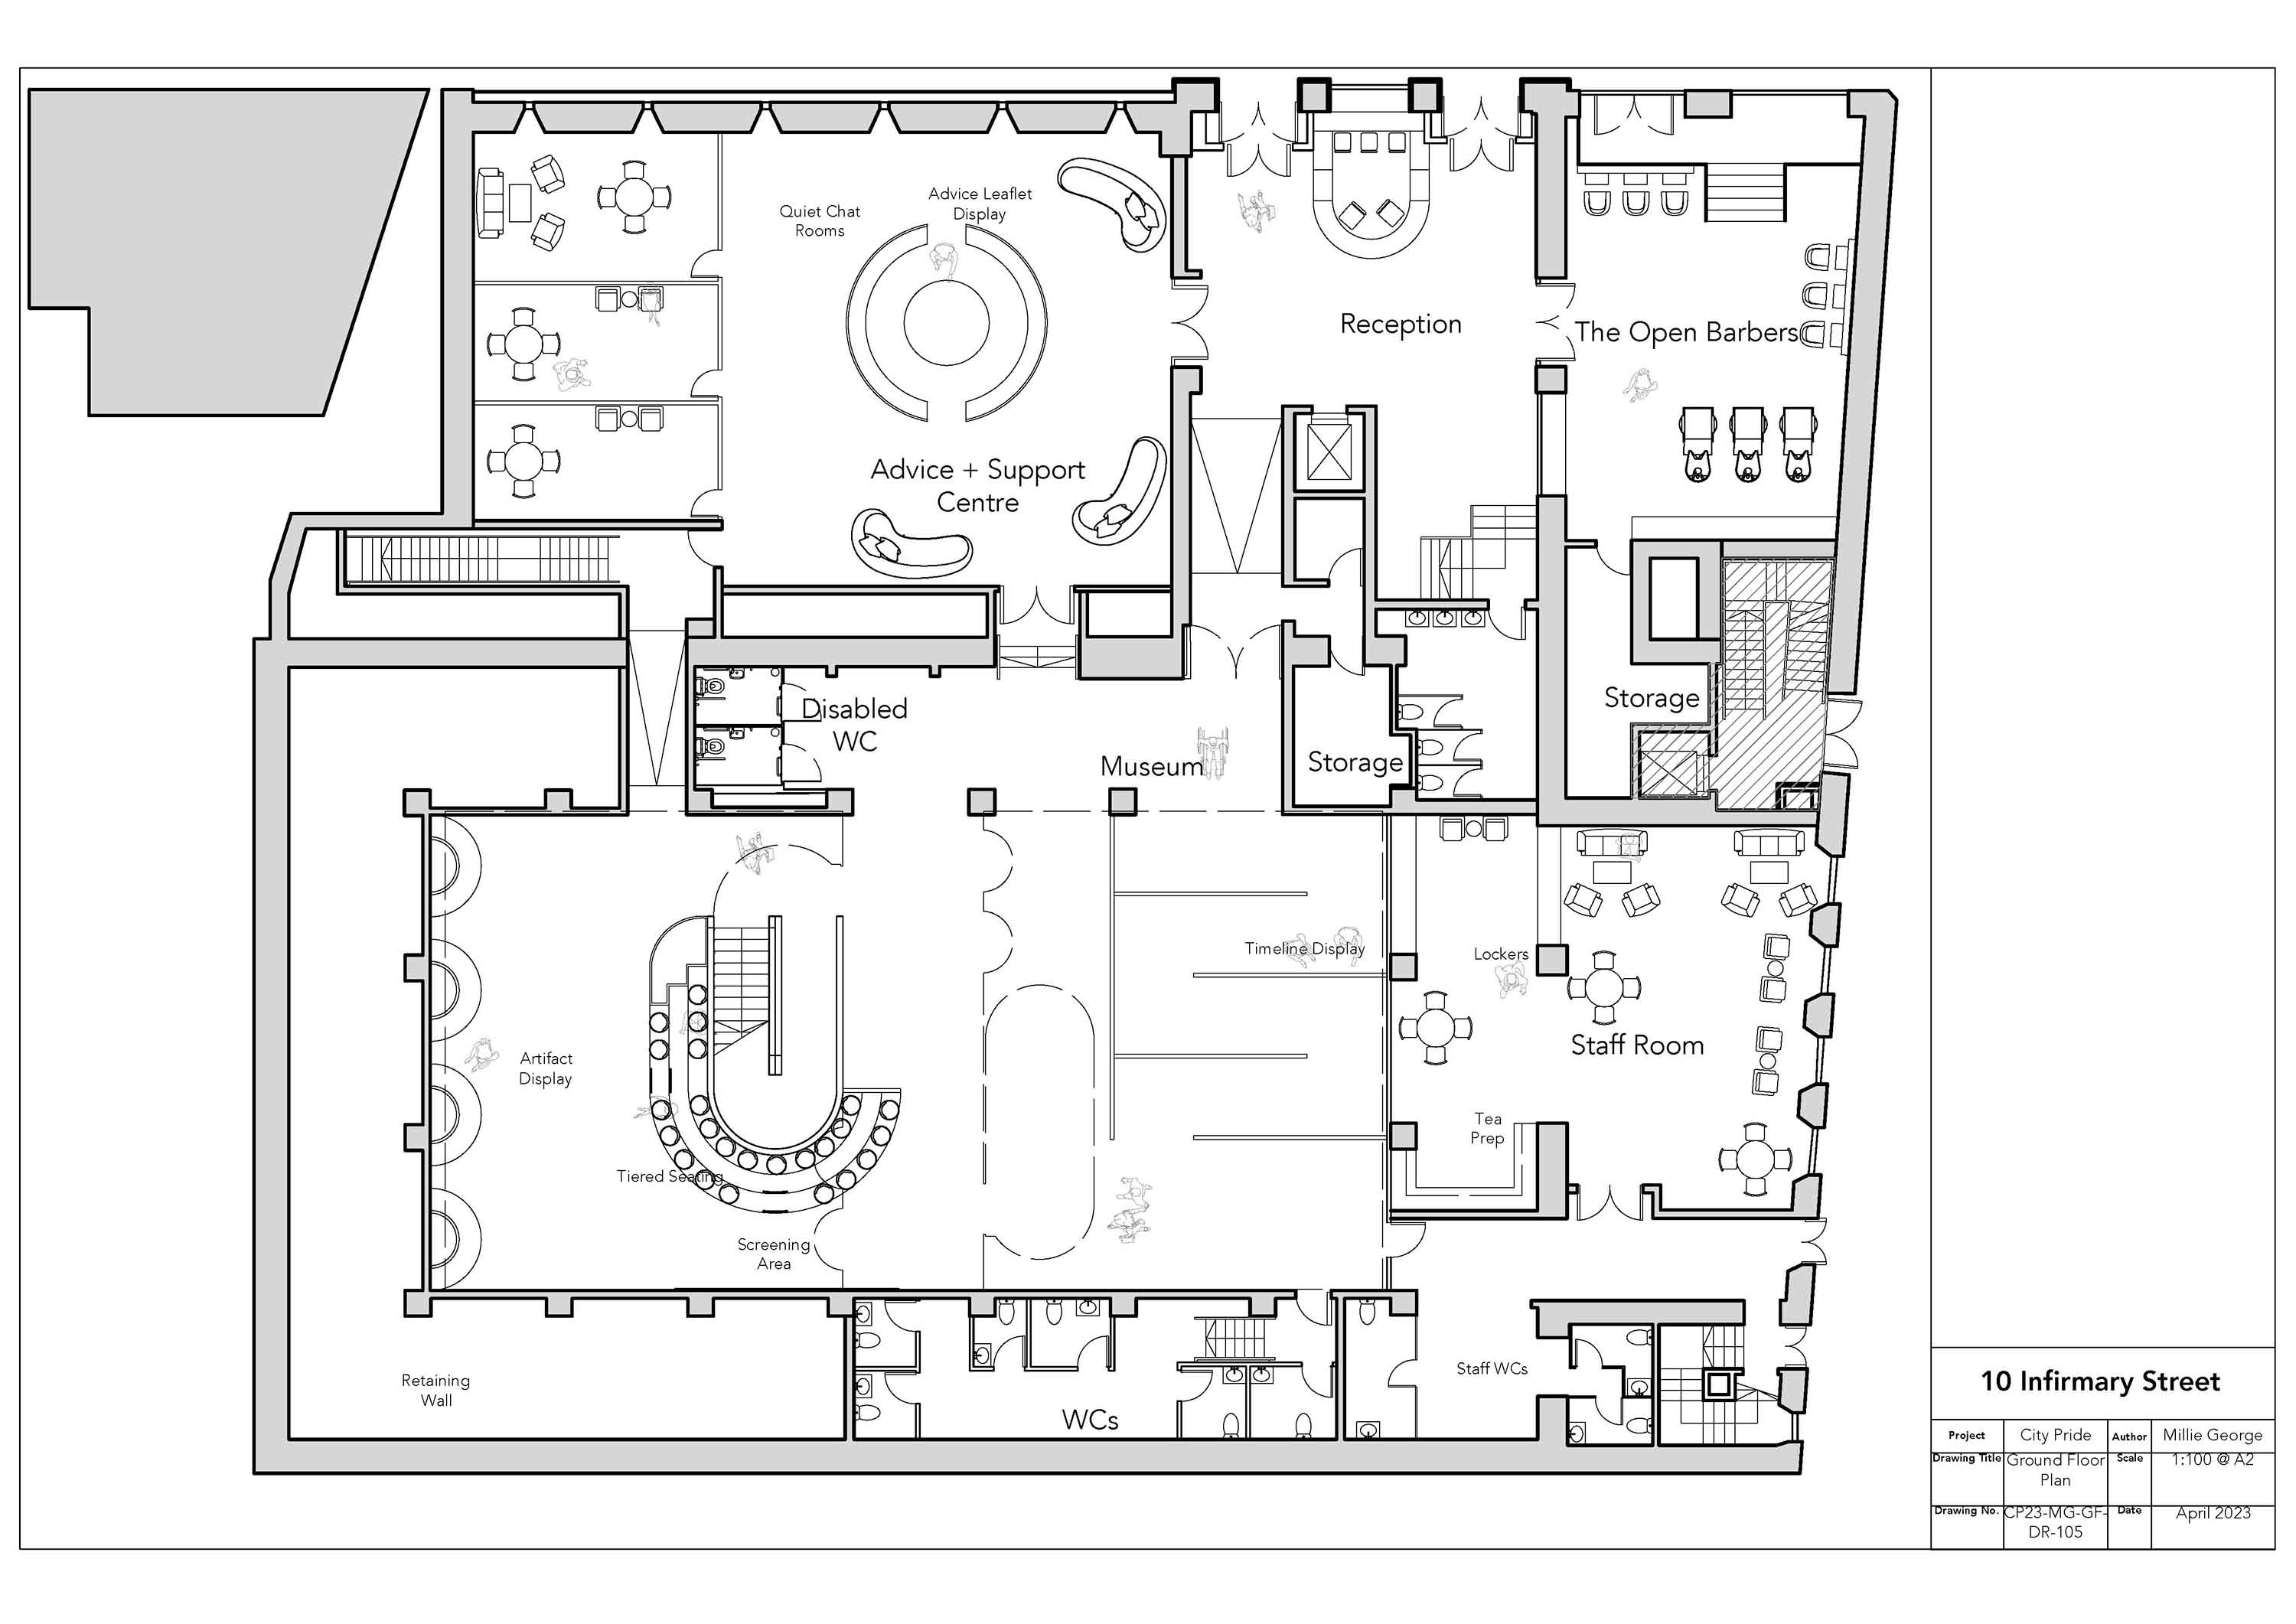 Ground Floor Plan 1-100 @ A2